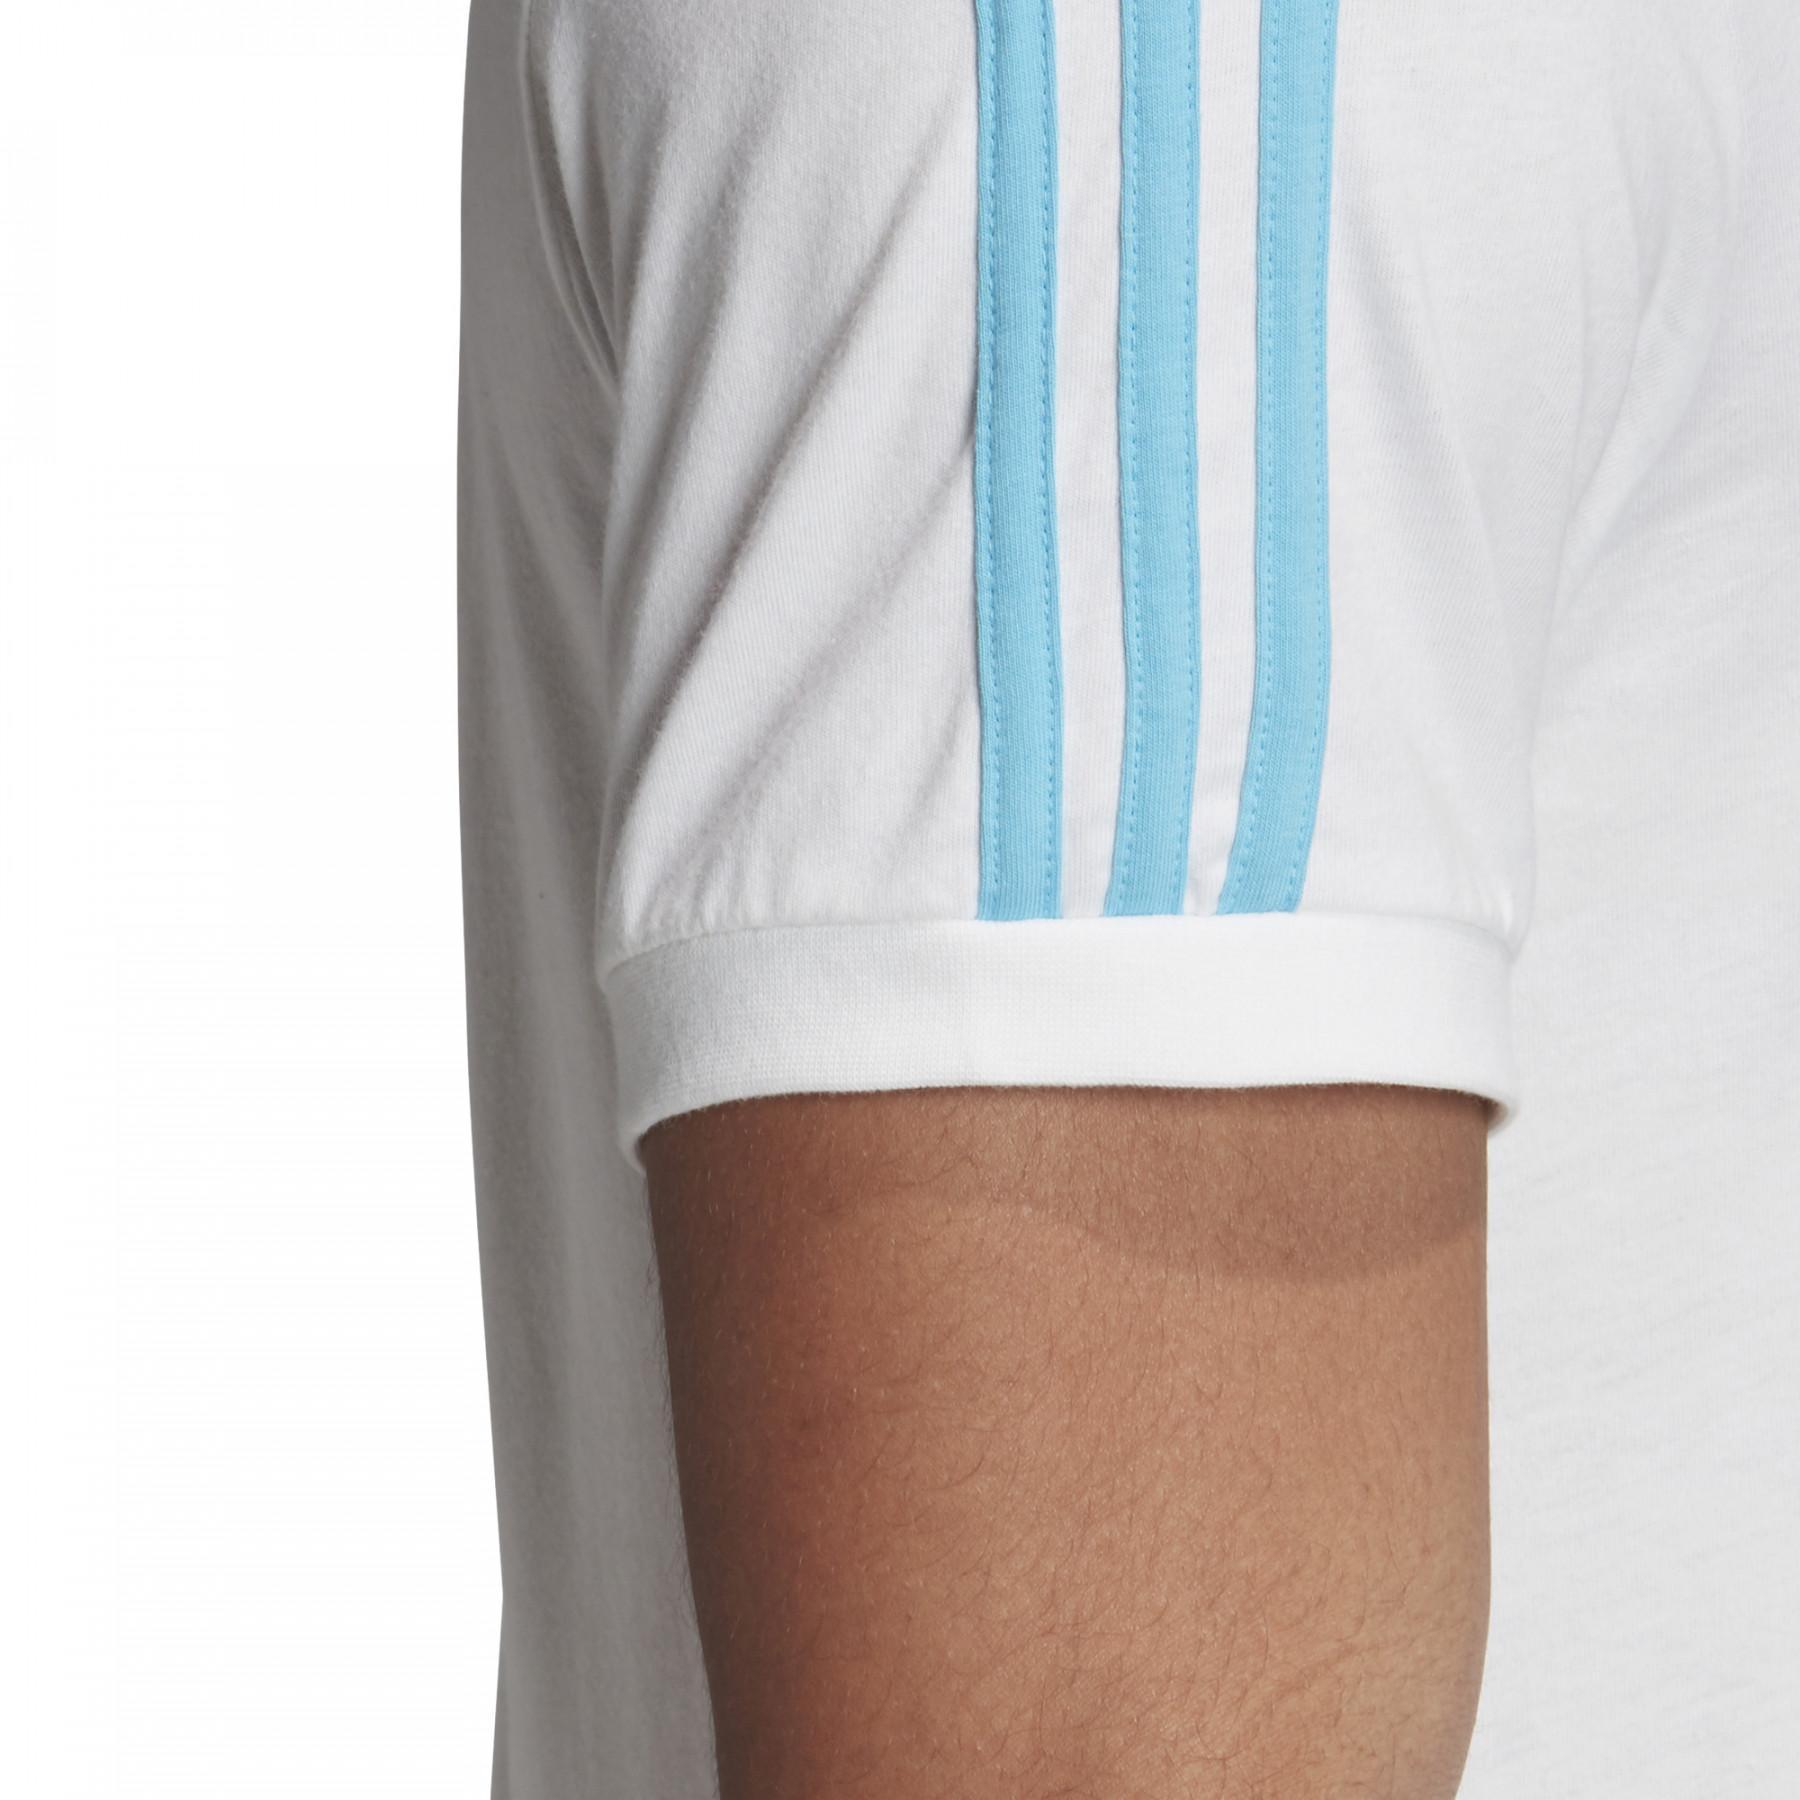 Koszulka adidas Official Emblem